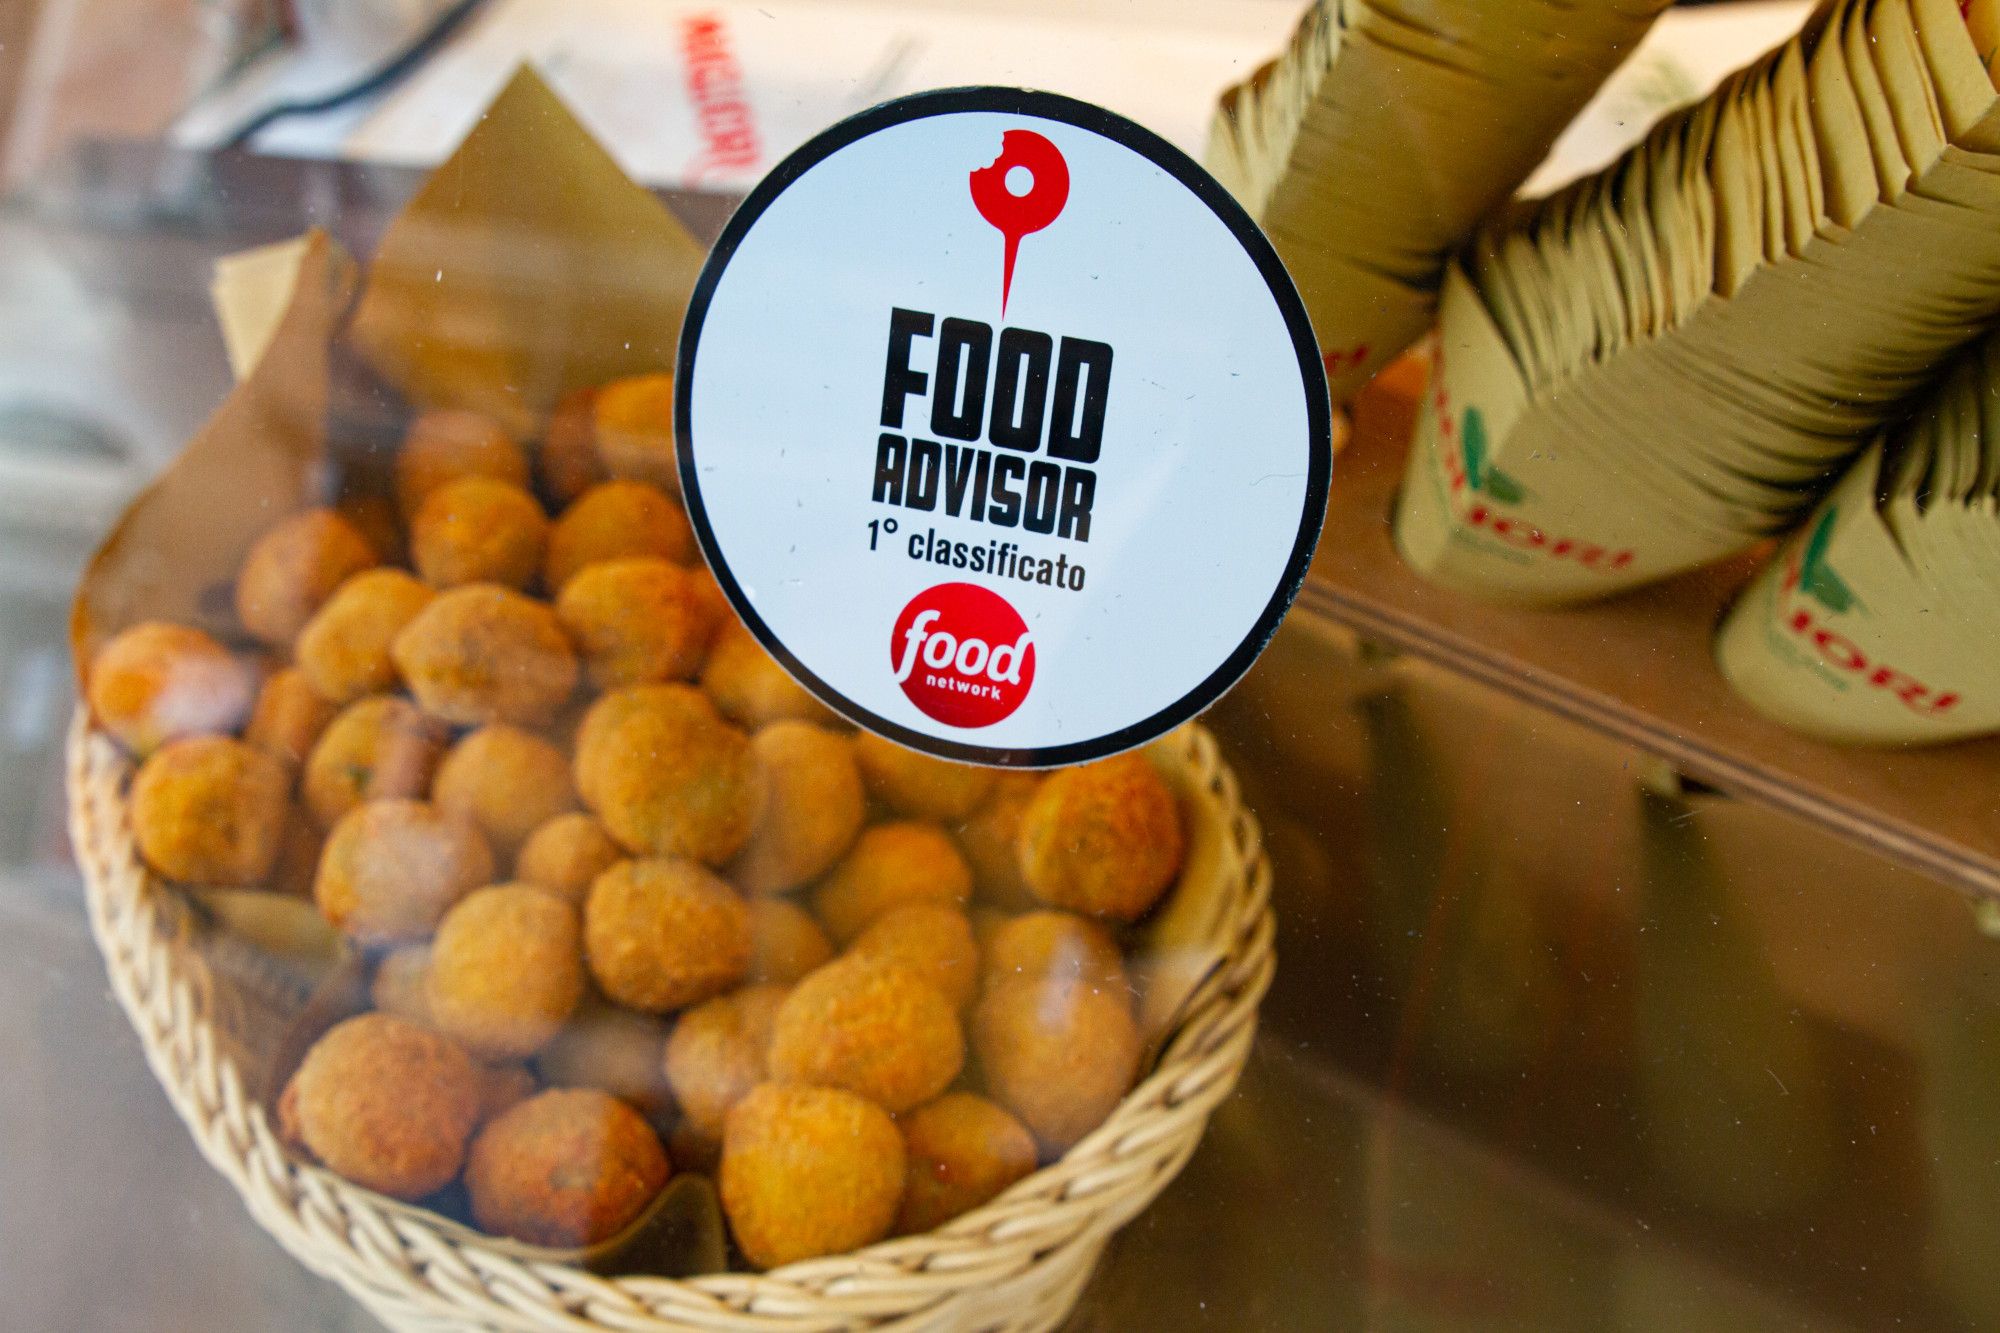 Migliori Olive - migliori olive all'Ascolana secondo il programma Food Advisor condotto da Simone Rugiati